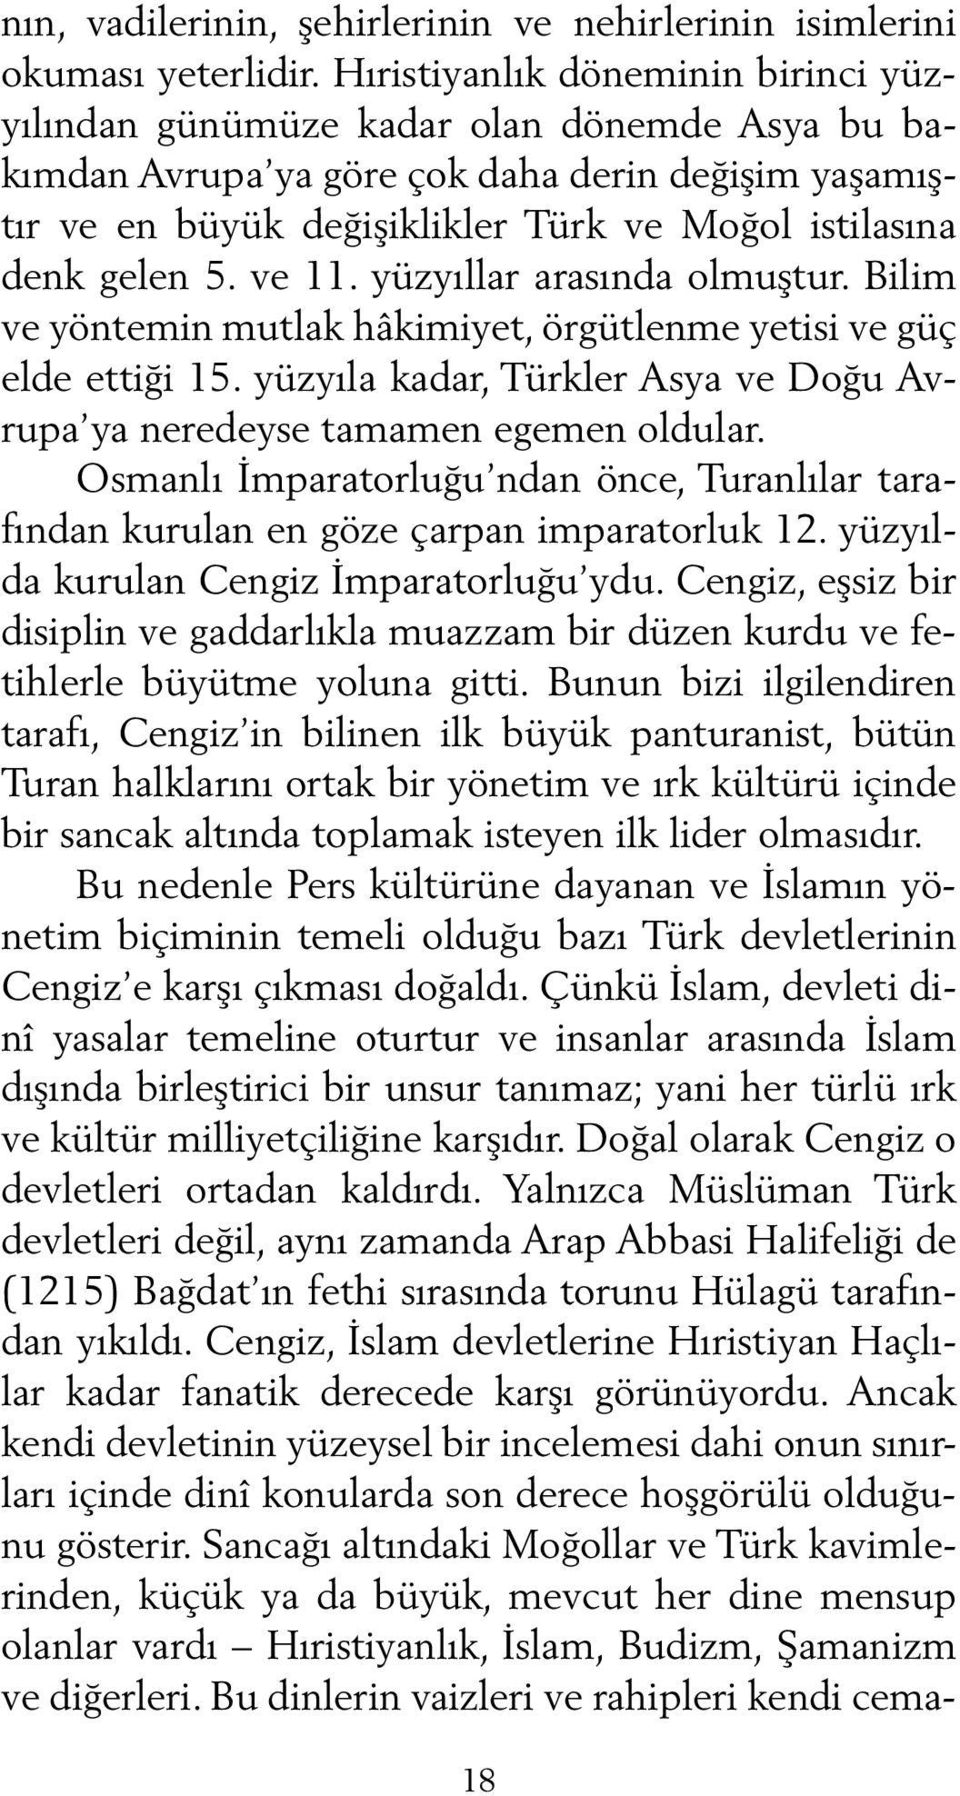 5. ve 11. yüzyıllar arasında olmuştur. Bilim ve yöntemin mutlak hâkimiyet, örgütlenme yetisi ve güç el de ettiği 15. yüzyıla kadar, Türkler Asya ve Doğu Avrupa ya neredeyse tamamen egemen oldular.